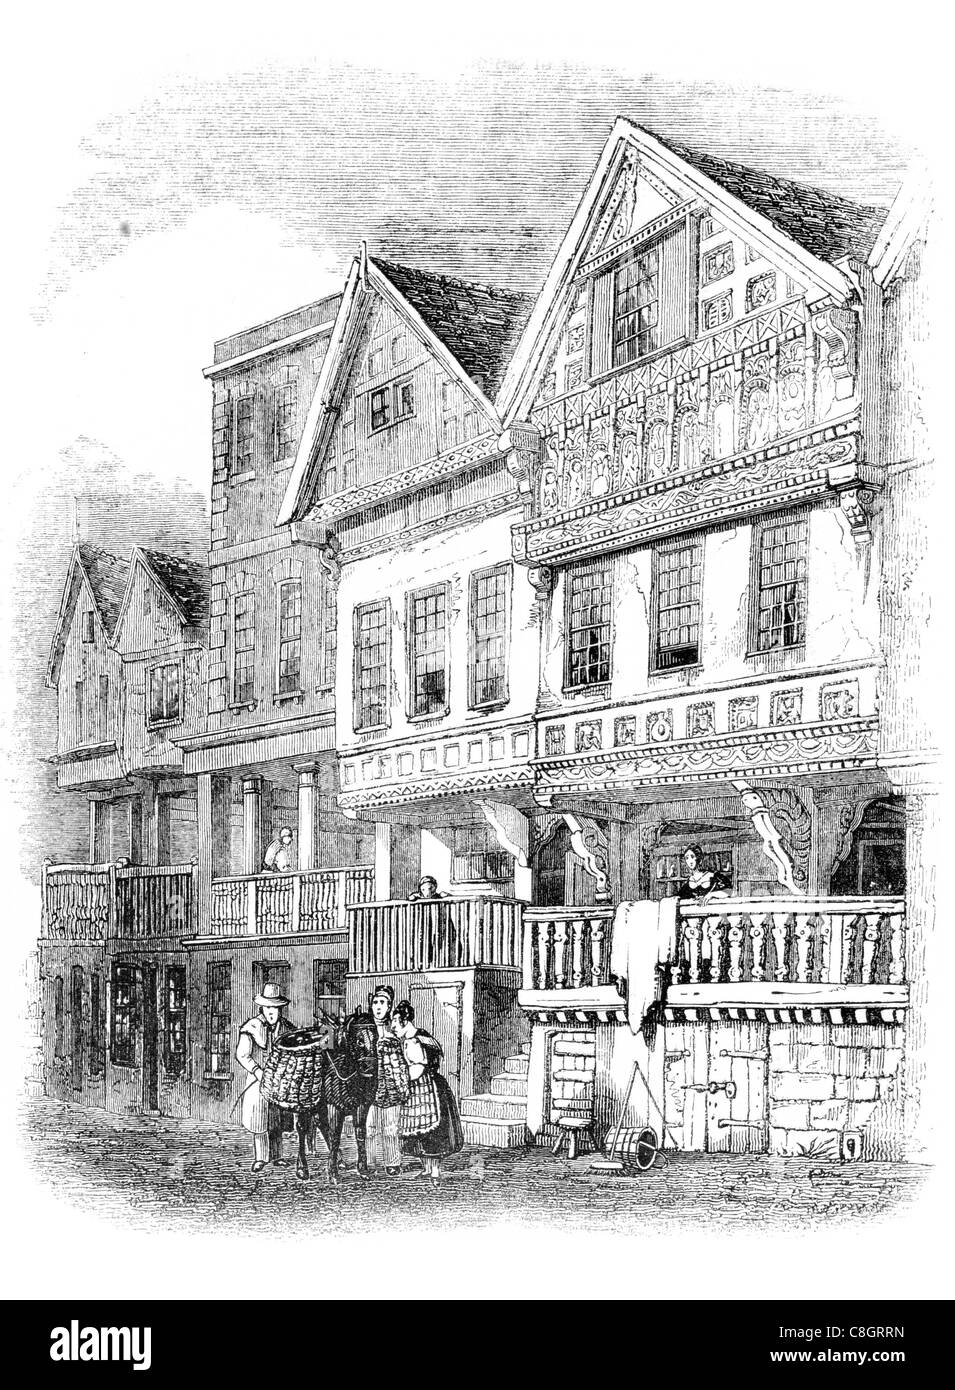 Maisons anciennes Chester Rows Ligne passage couvert premier étage entrée boutiques achetez au détail Cheshire Angleterre époque médiévale, attirer des touristes Banque D'Images